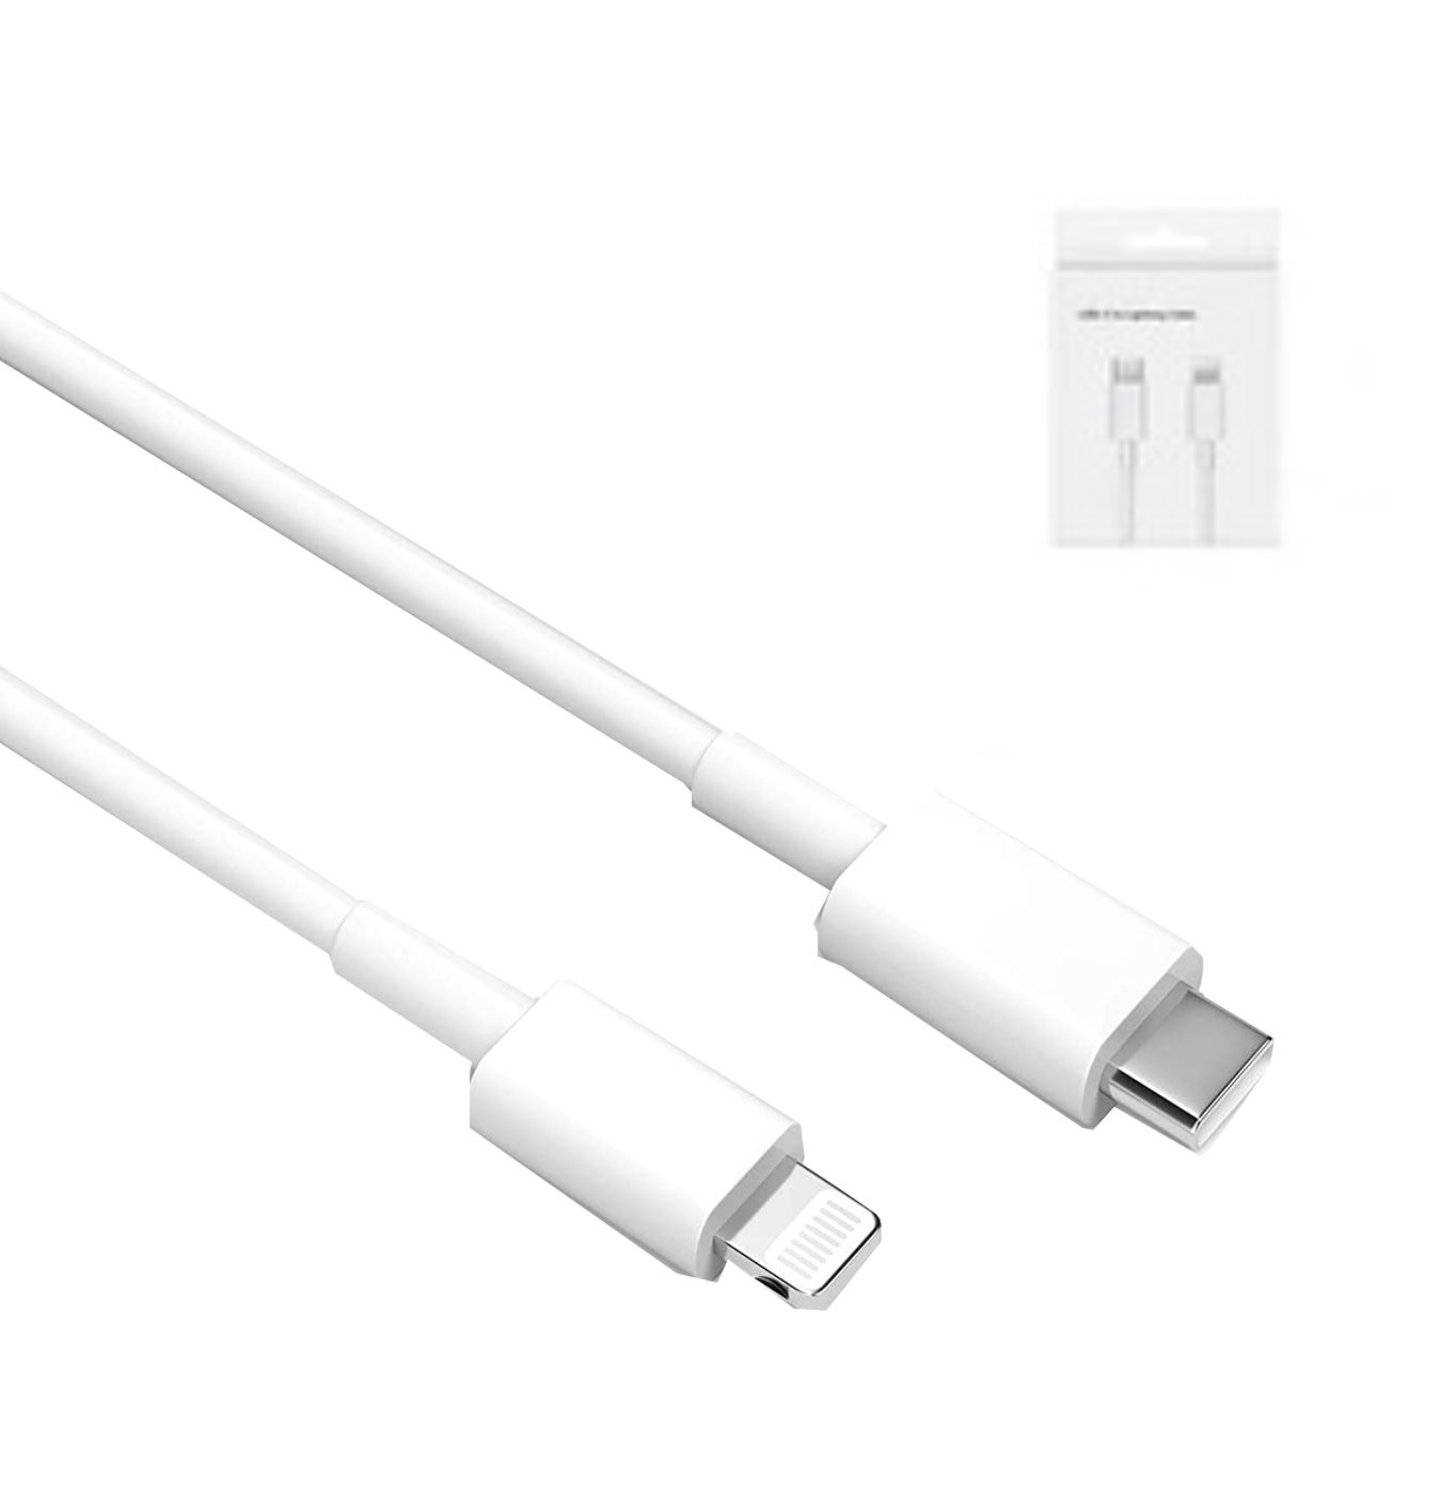 Cable De Carga Ecomlab Usb-Lightning Color Blanco Compatible Con Iphone